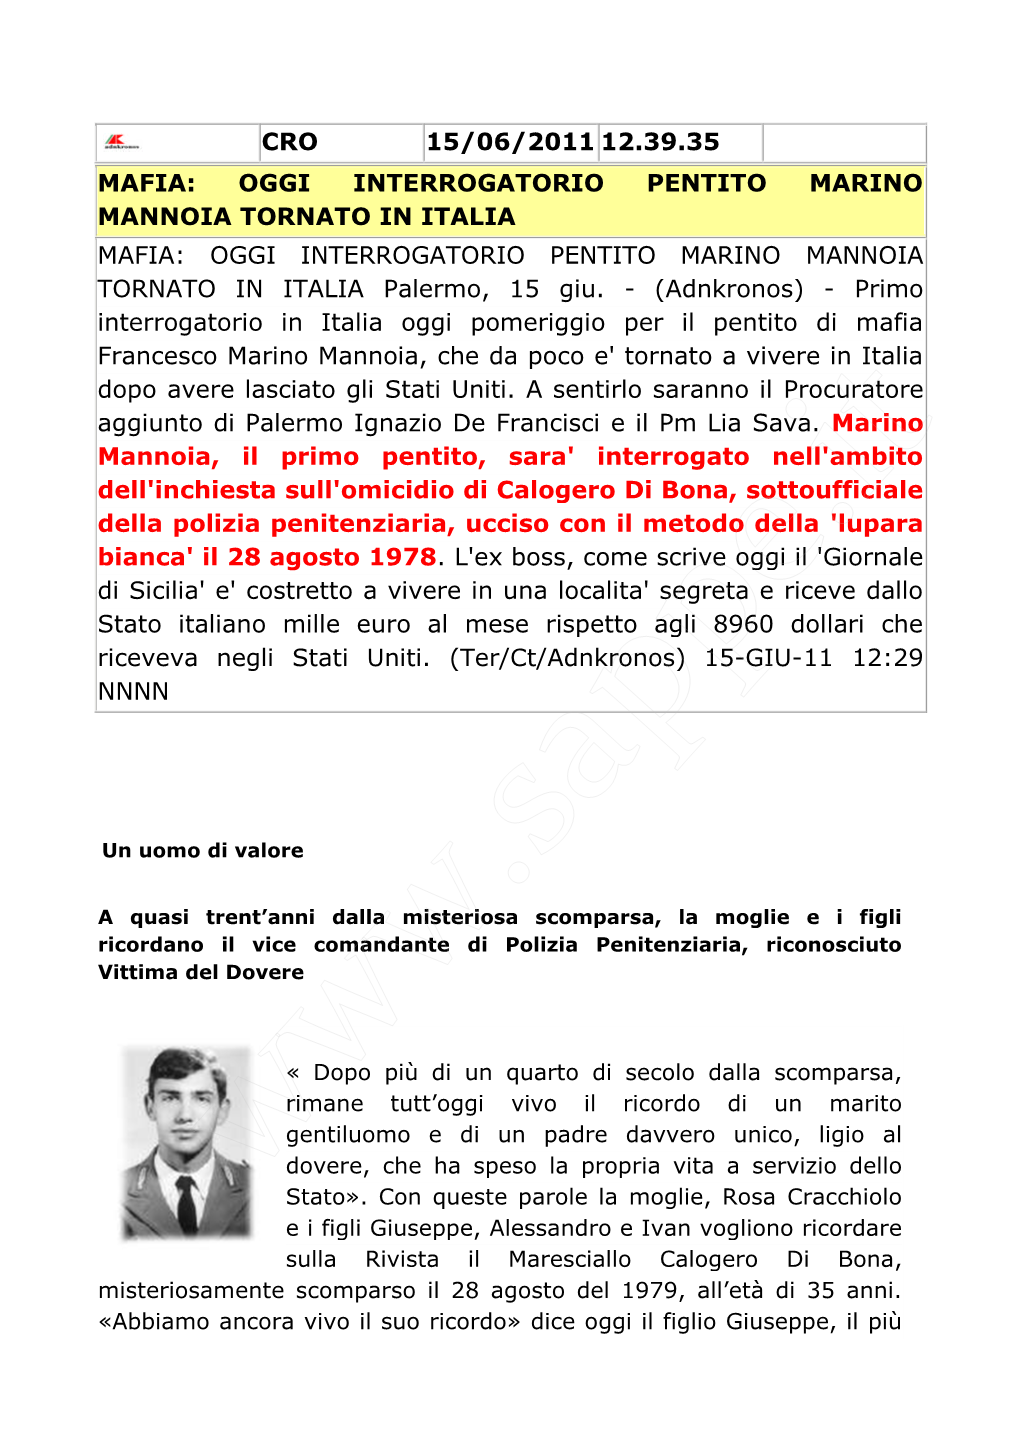 OGGI INTERROGATORIO PENTITO MARINO MANNOIA TORNATO in ITALIA MAFIA: OGGI INTERROGATORIO PENTITO MARINO MANNOIA TORNATO in ITALIA Palermo, 15 Giu